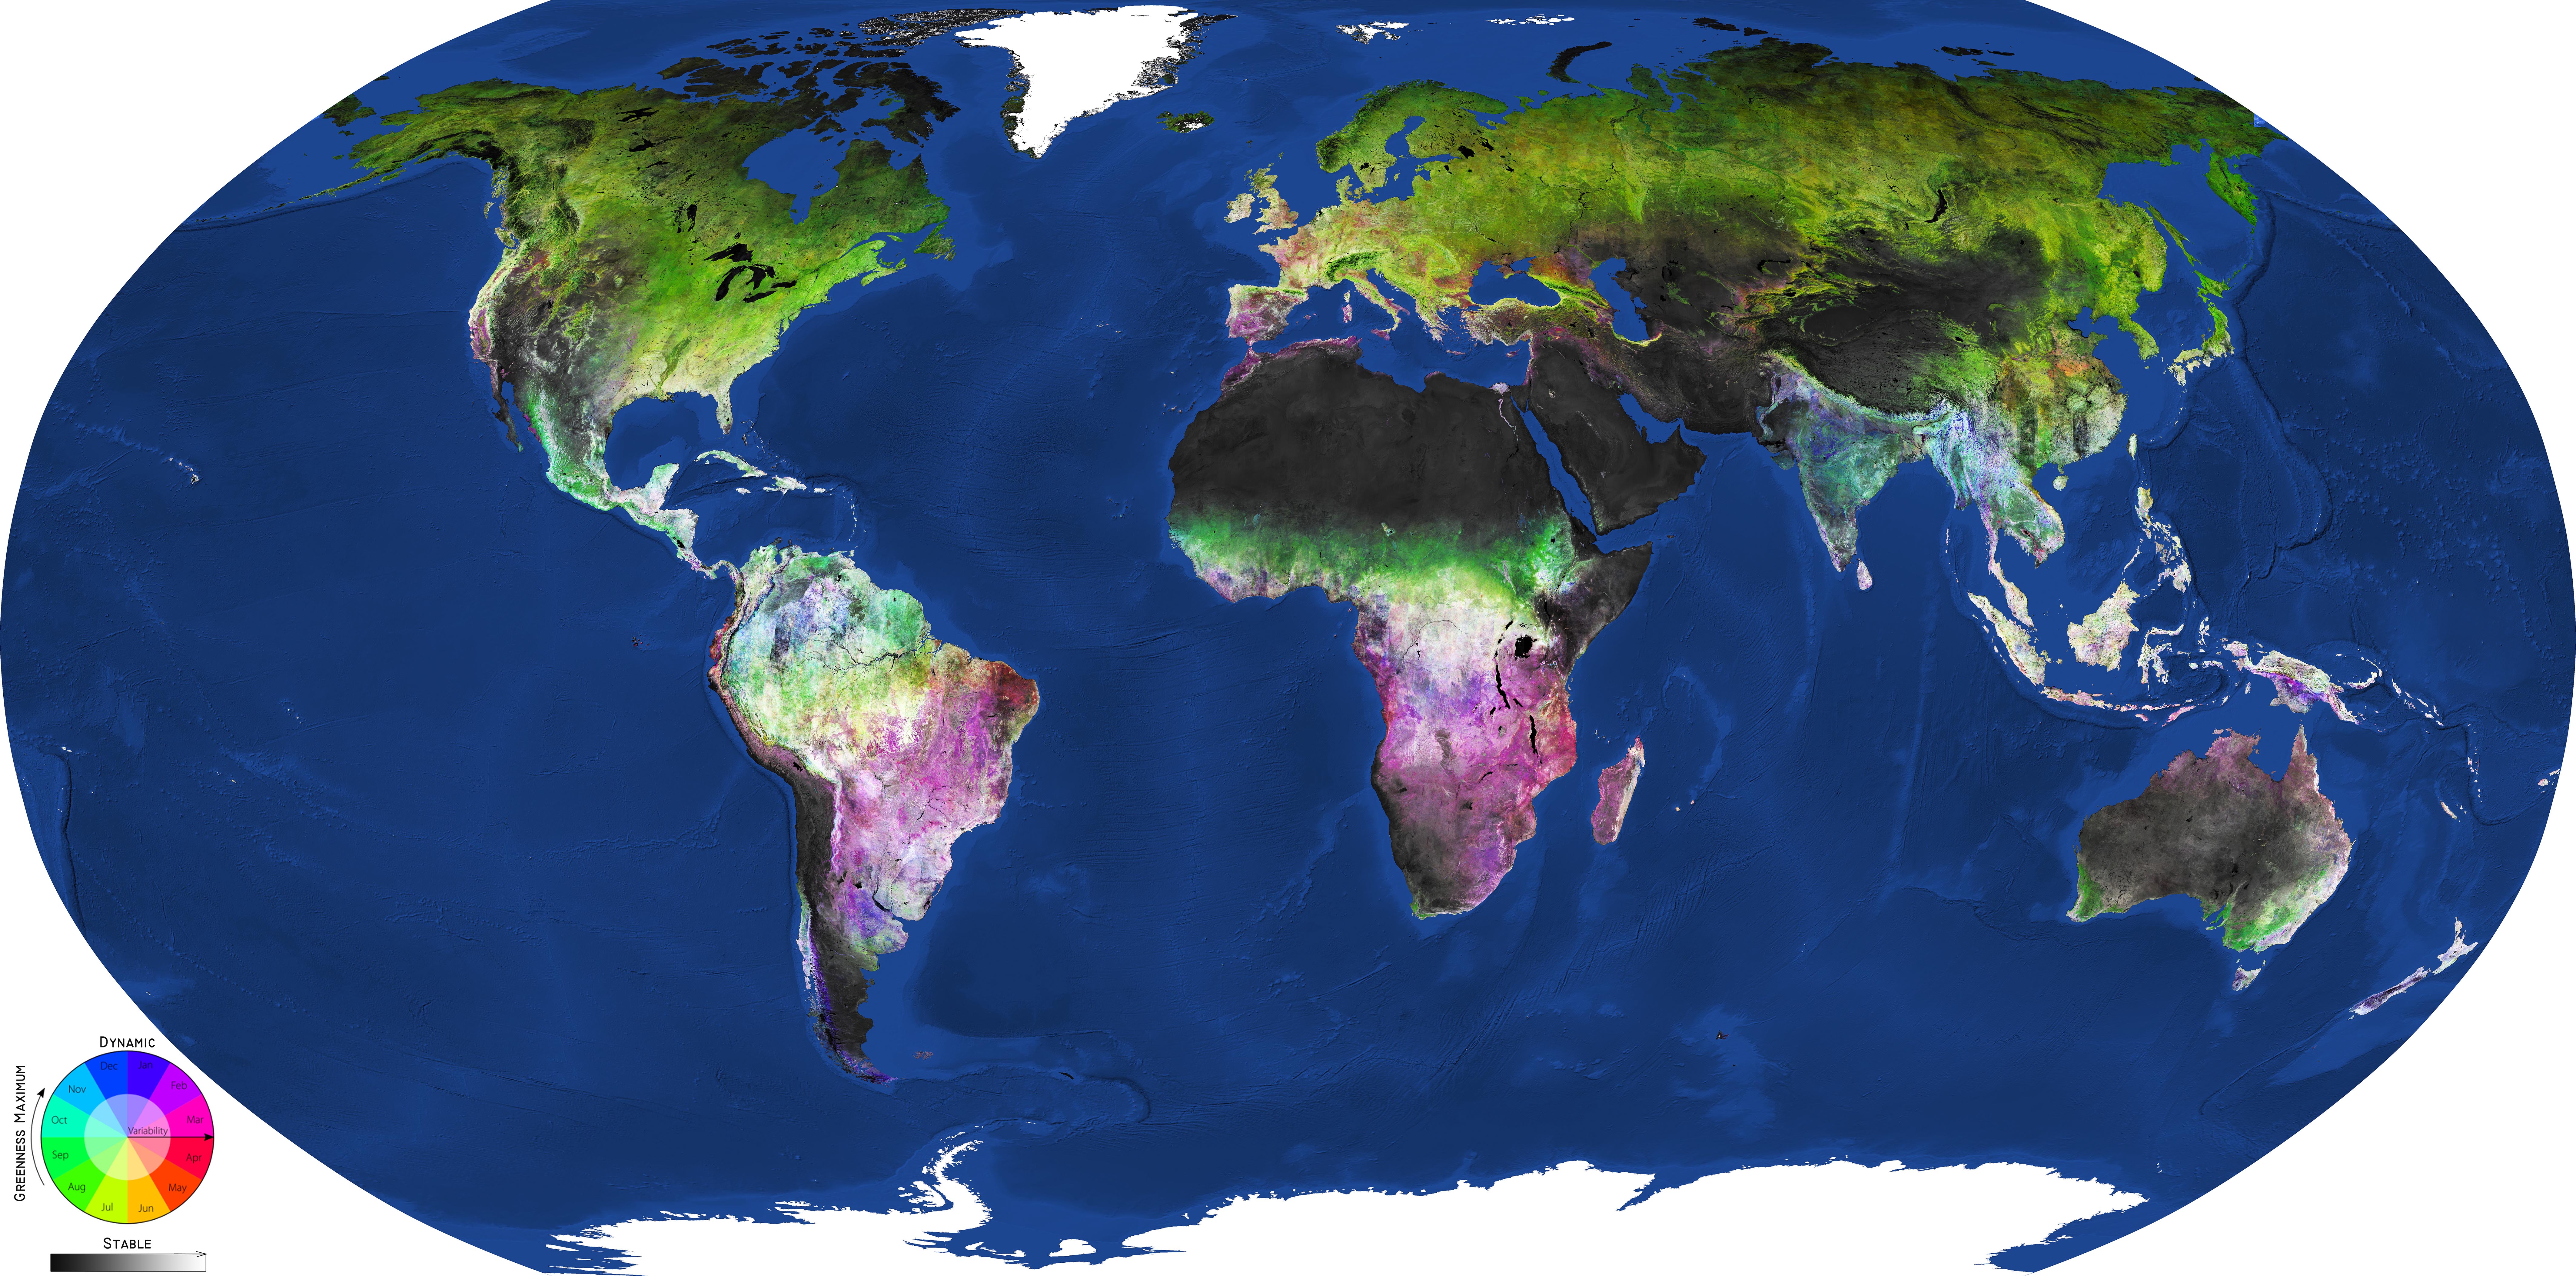 Carte globale de la couverture végétale globale générée par l'outil LandMonitoring.Earth de GeoVille à partir des images du satellite d'observation de la Terre Sentinel-2 de l'ESA, prises entre 2016 et 2018. Cercle chromatique : saison, plus précisément mois, correspondant au pic (maximum) de végétation (couleurs) et densité de la végétation (transparent pour les prairies, opaque pour les forêts). Niveau de gris : échelle de la biomasse, avec les zones les plus riches en biomasses en blanc et les plus pauvres en noir. © Modified Copernicus Sentinel data (2016–2018), processed by GeoVille